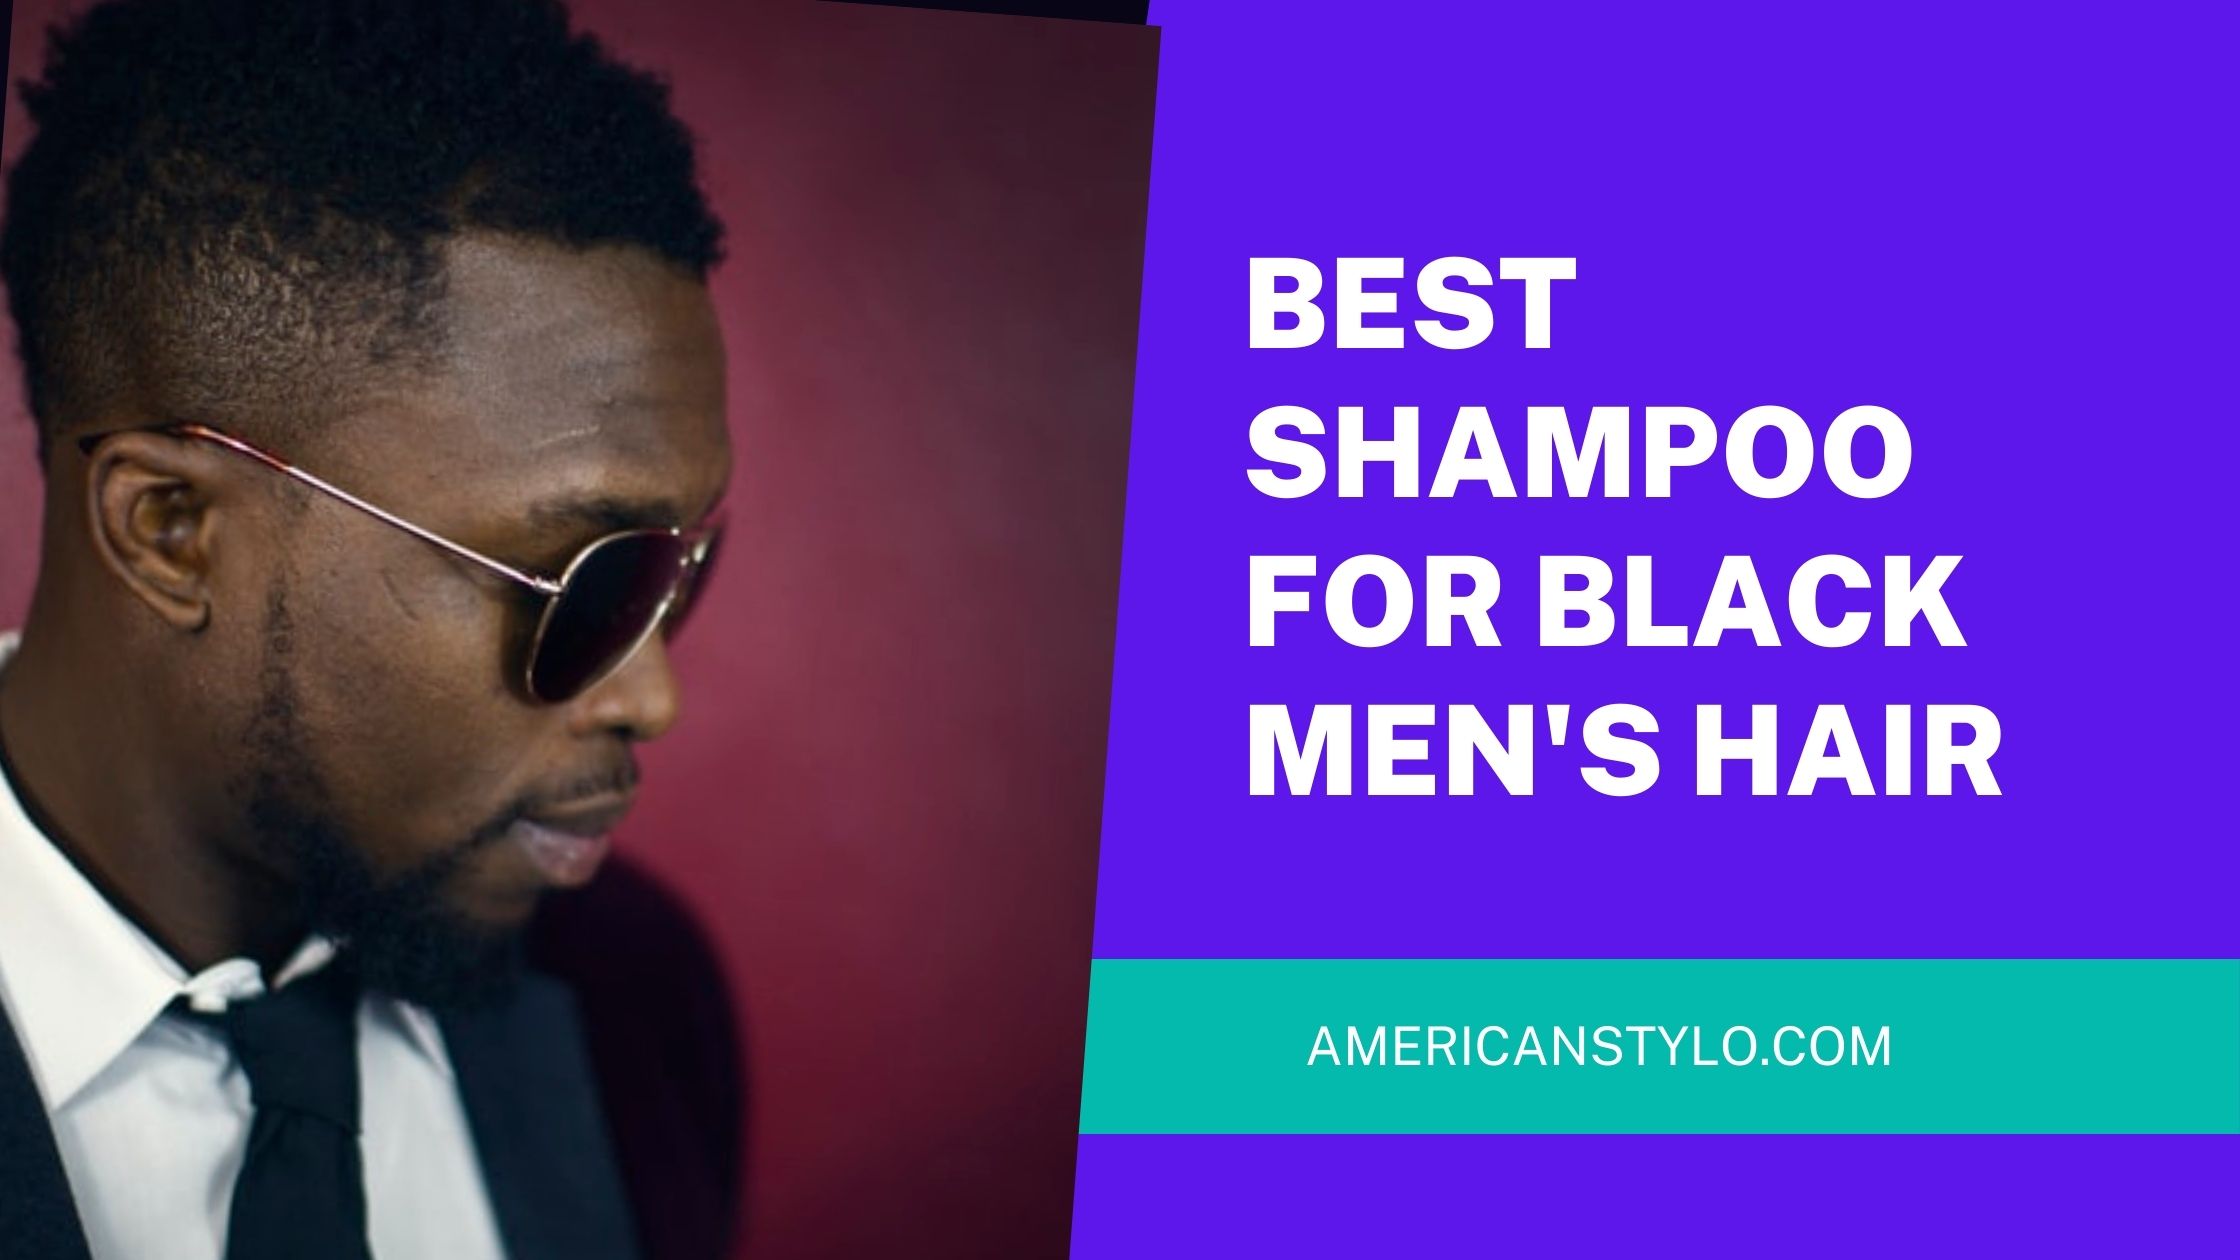 Best shampoo for black men's hair